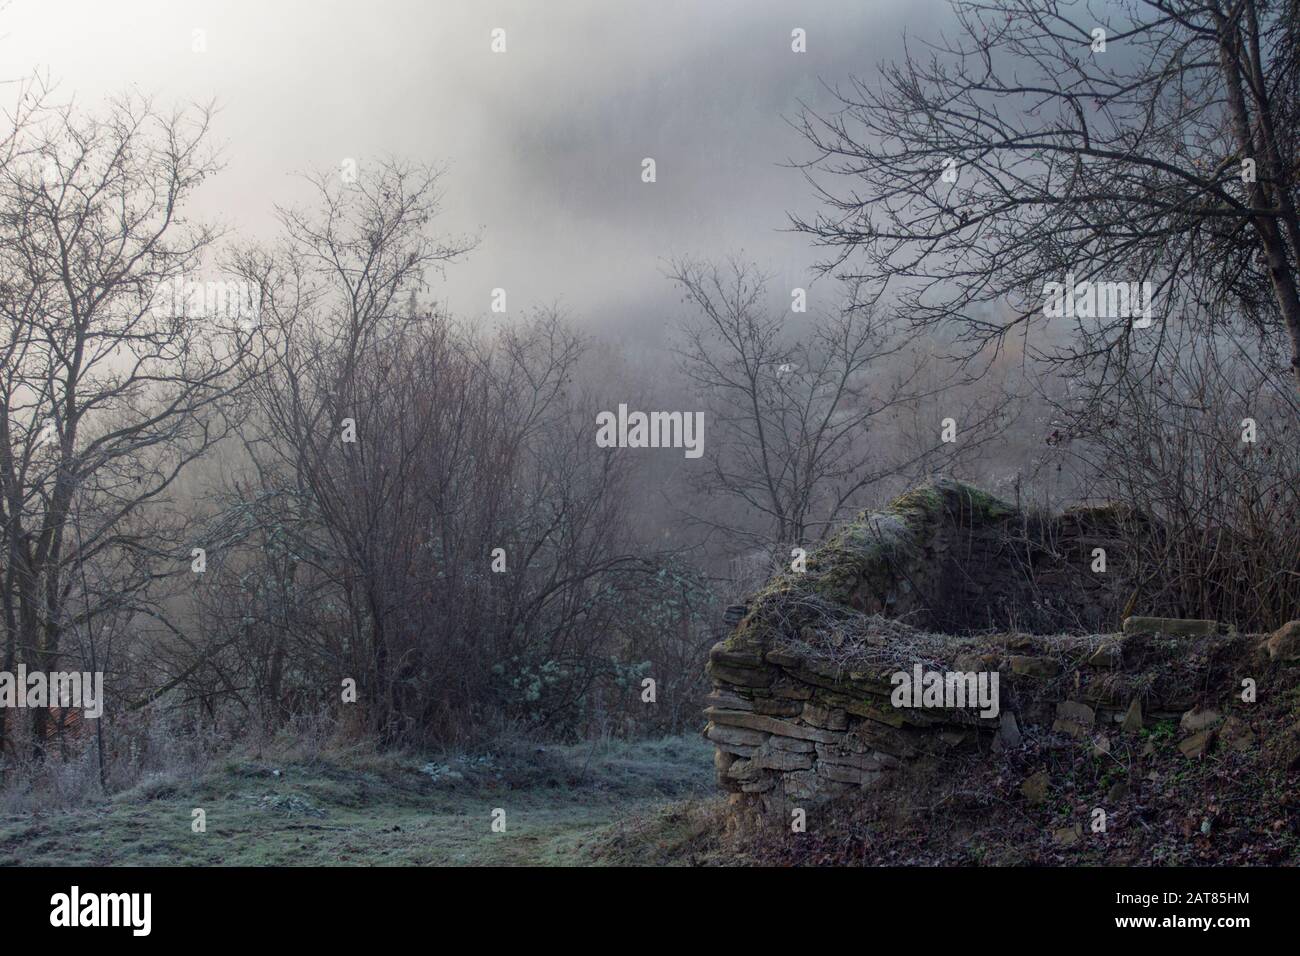 Une série de paysages brumeux en hiver. Un vieux mur de pierre près d'un sentier gelé sur fond d'arbres dans la brume avant le lever du soleil. Banque D'Images